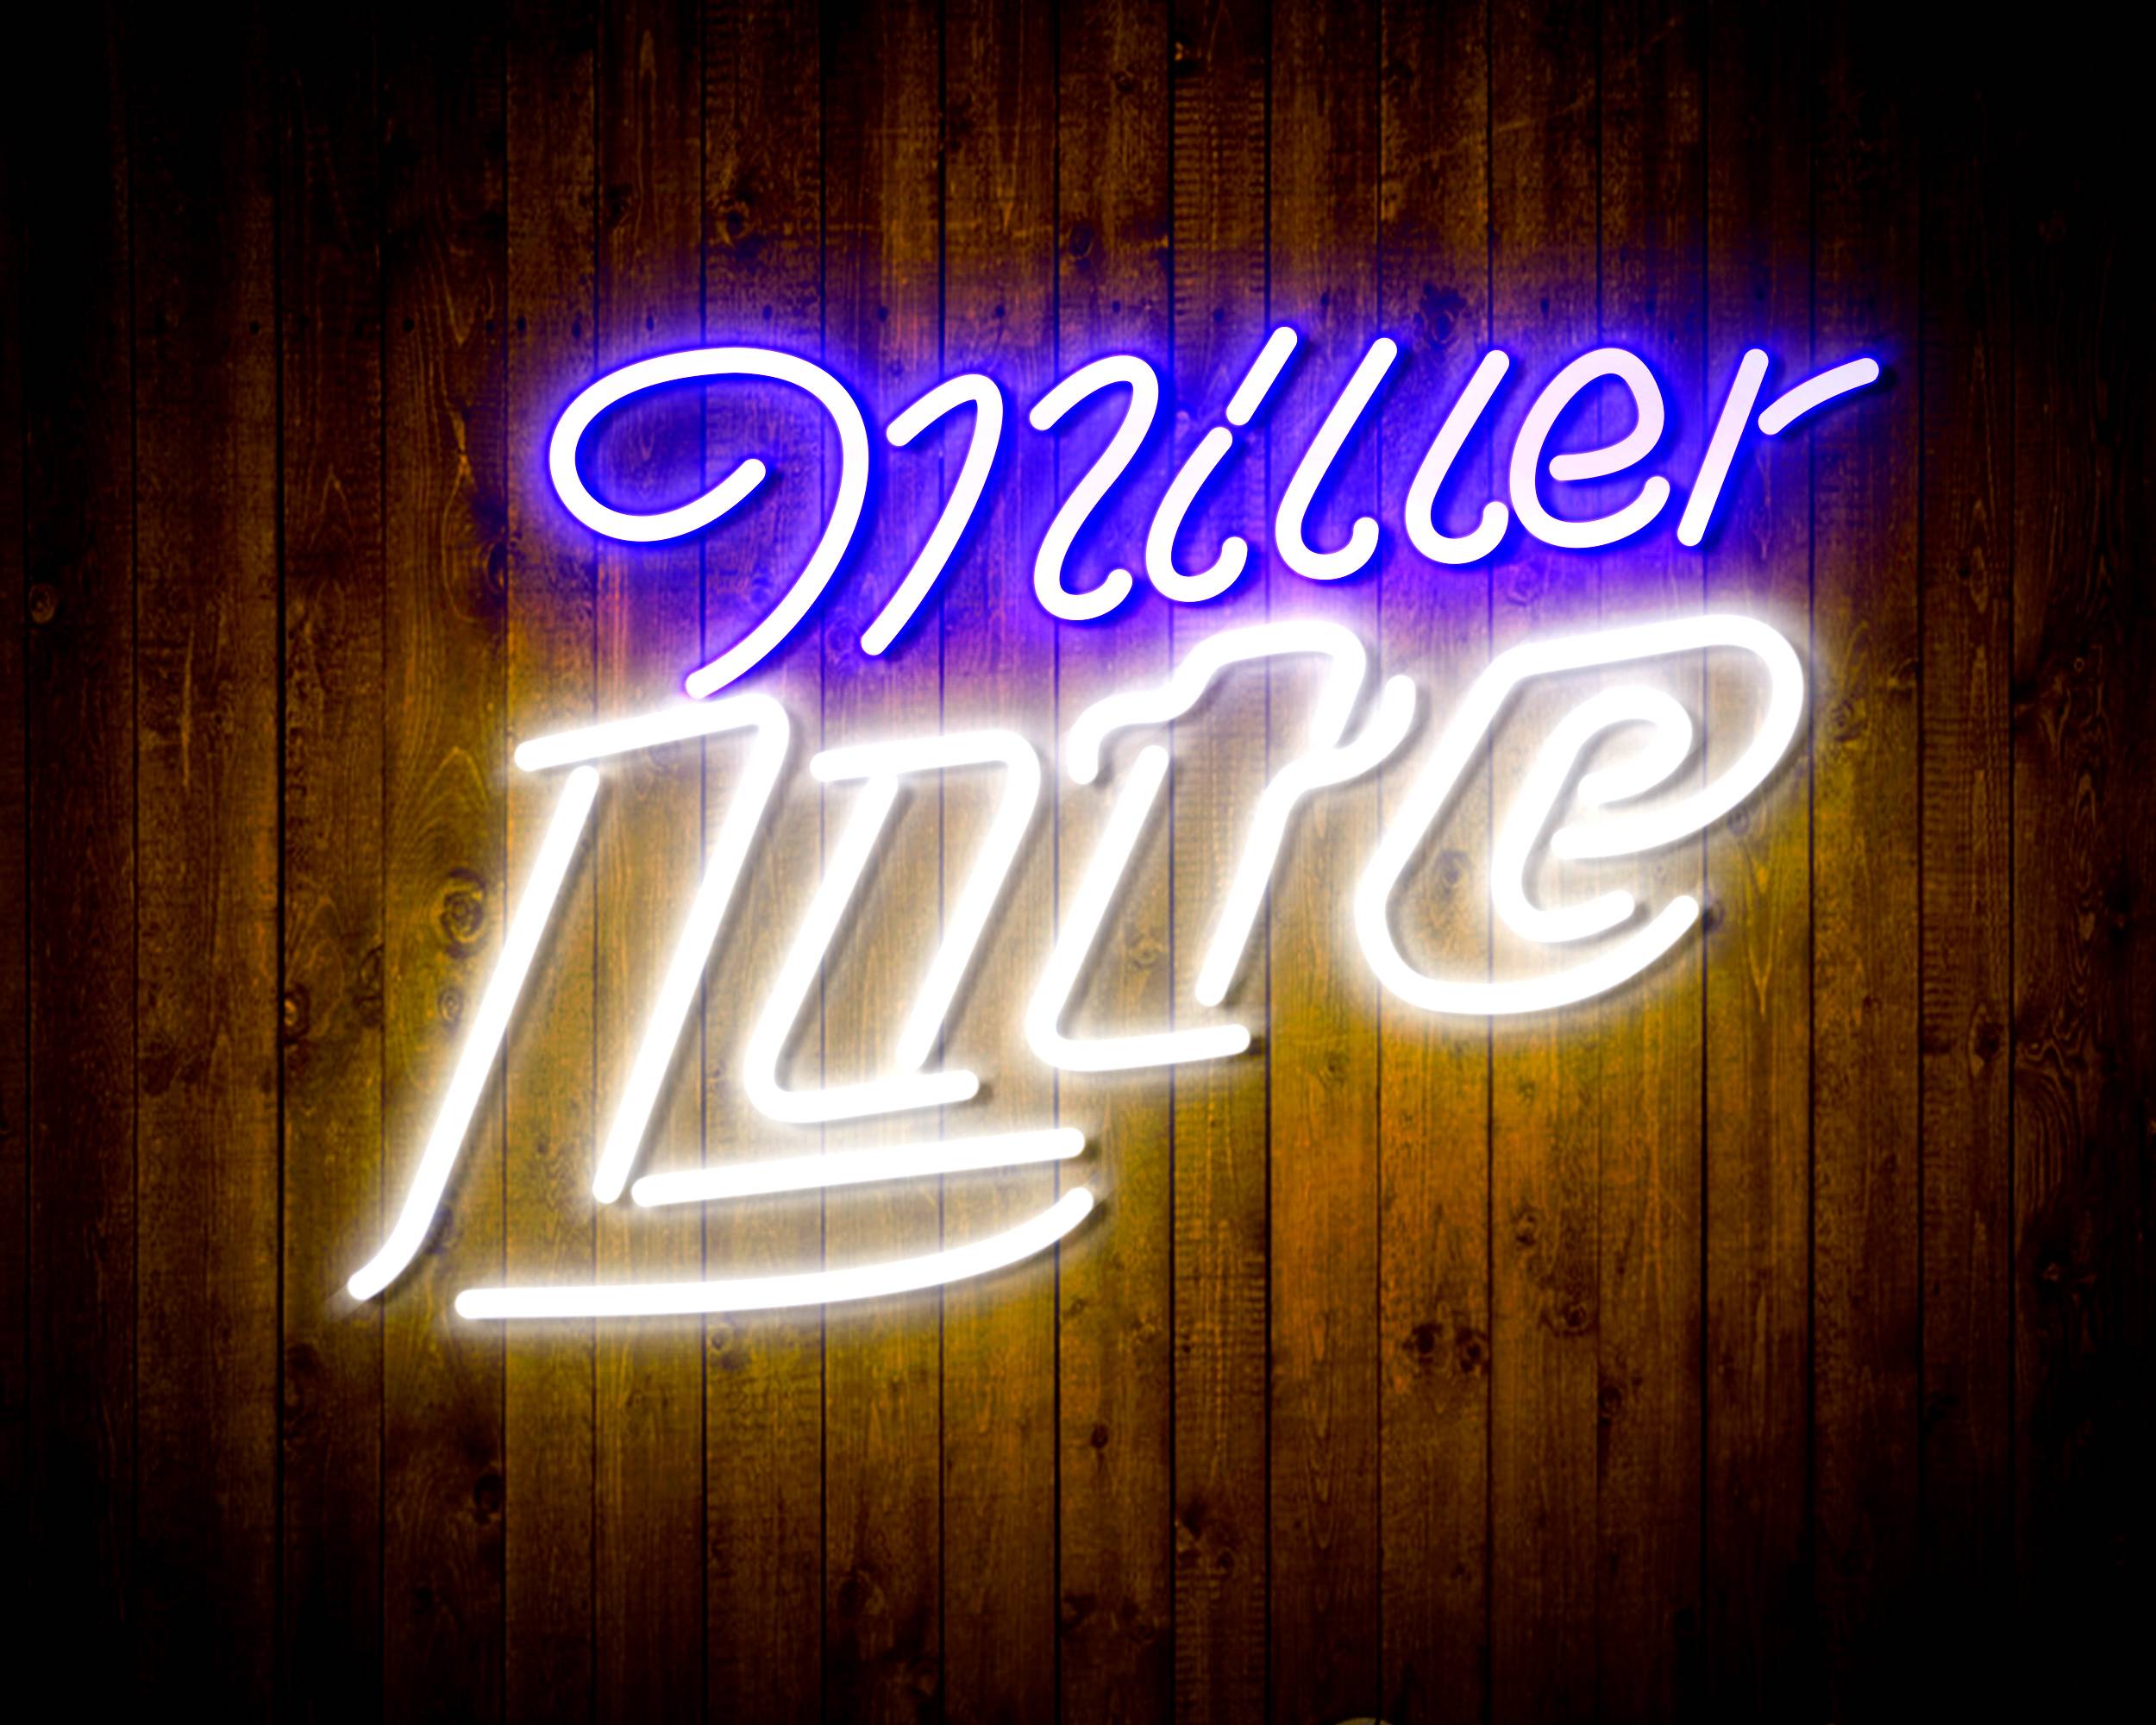 Miller Lite 3 Handmade LED Neon Light Sign